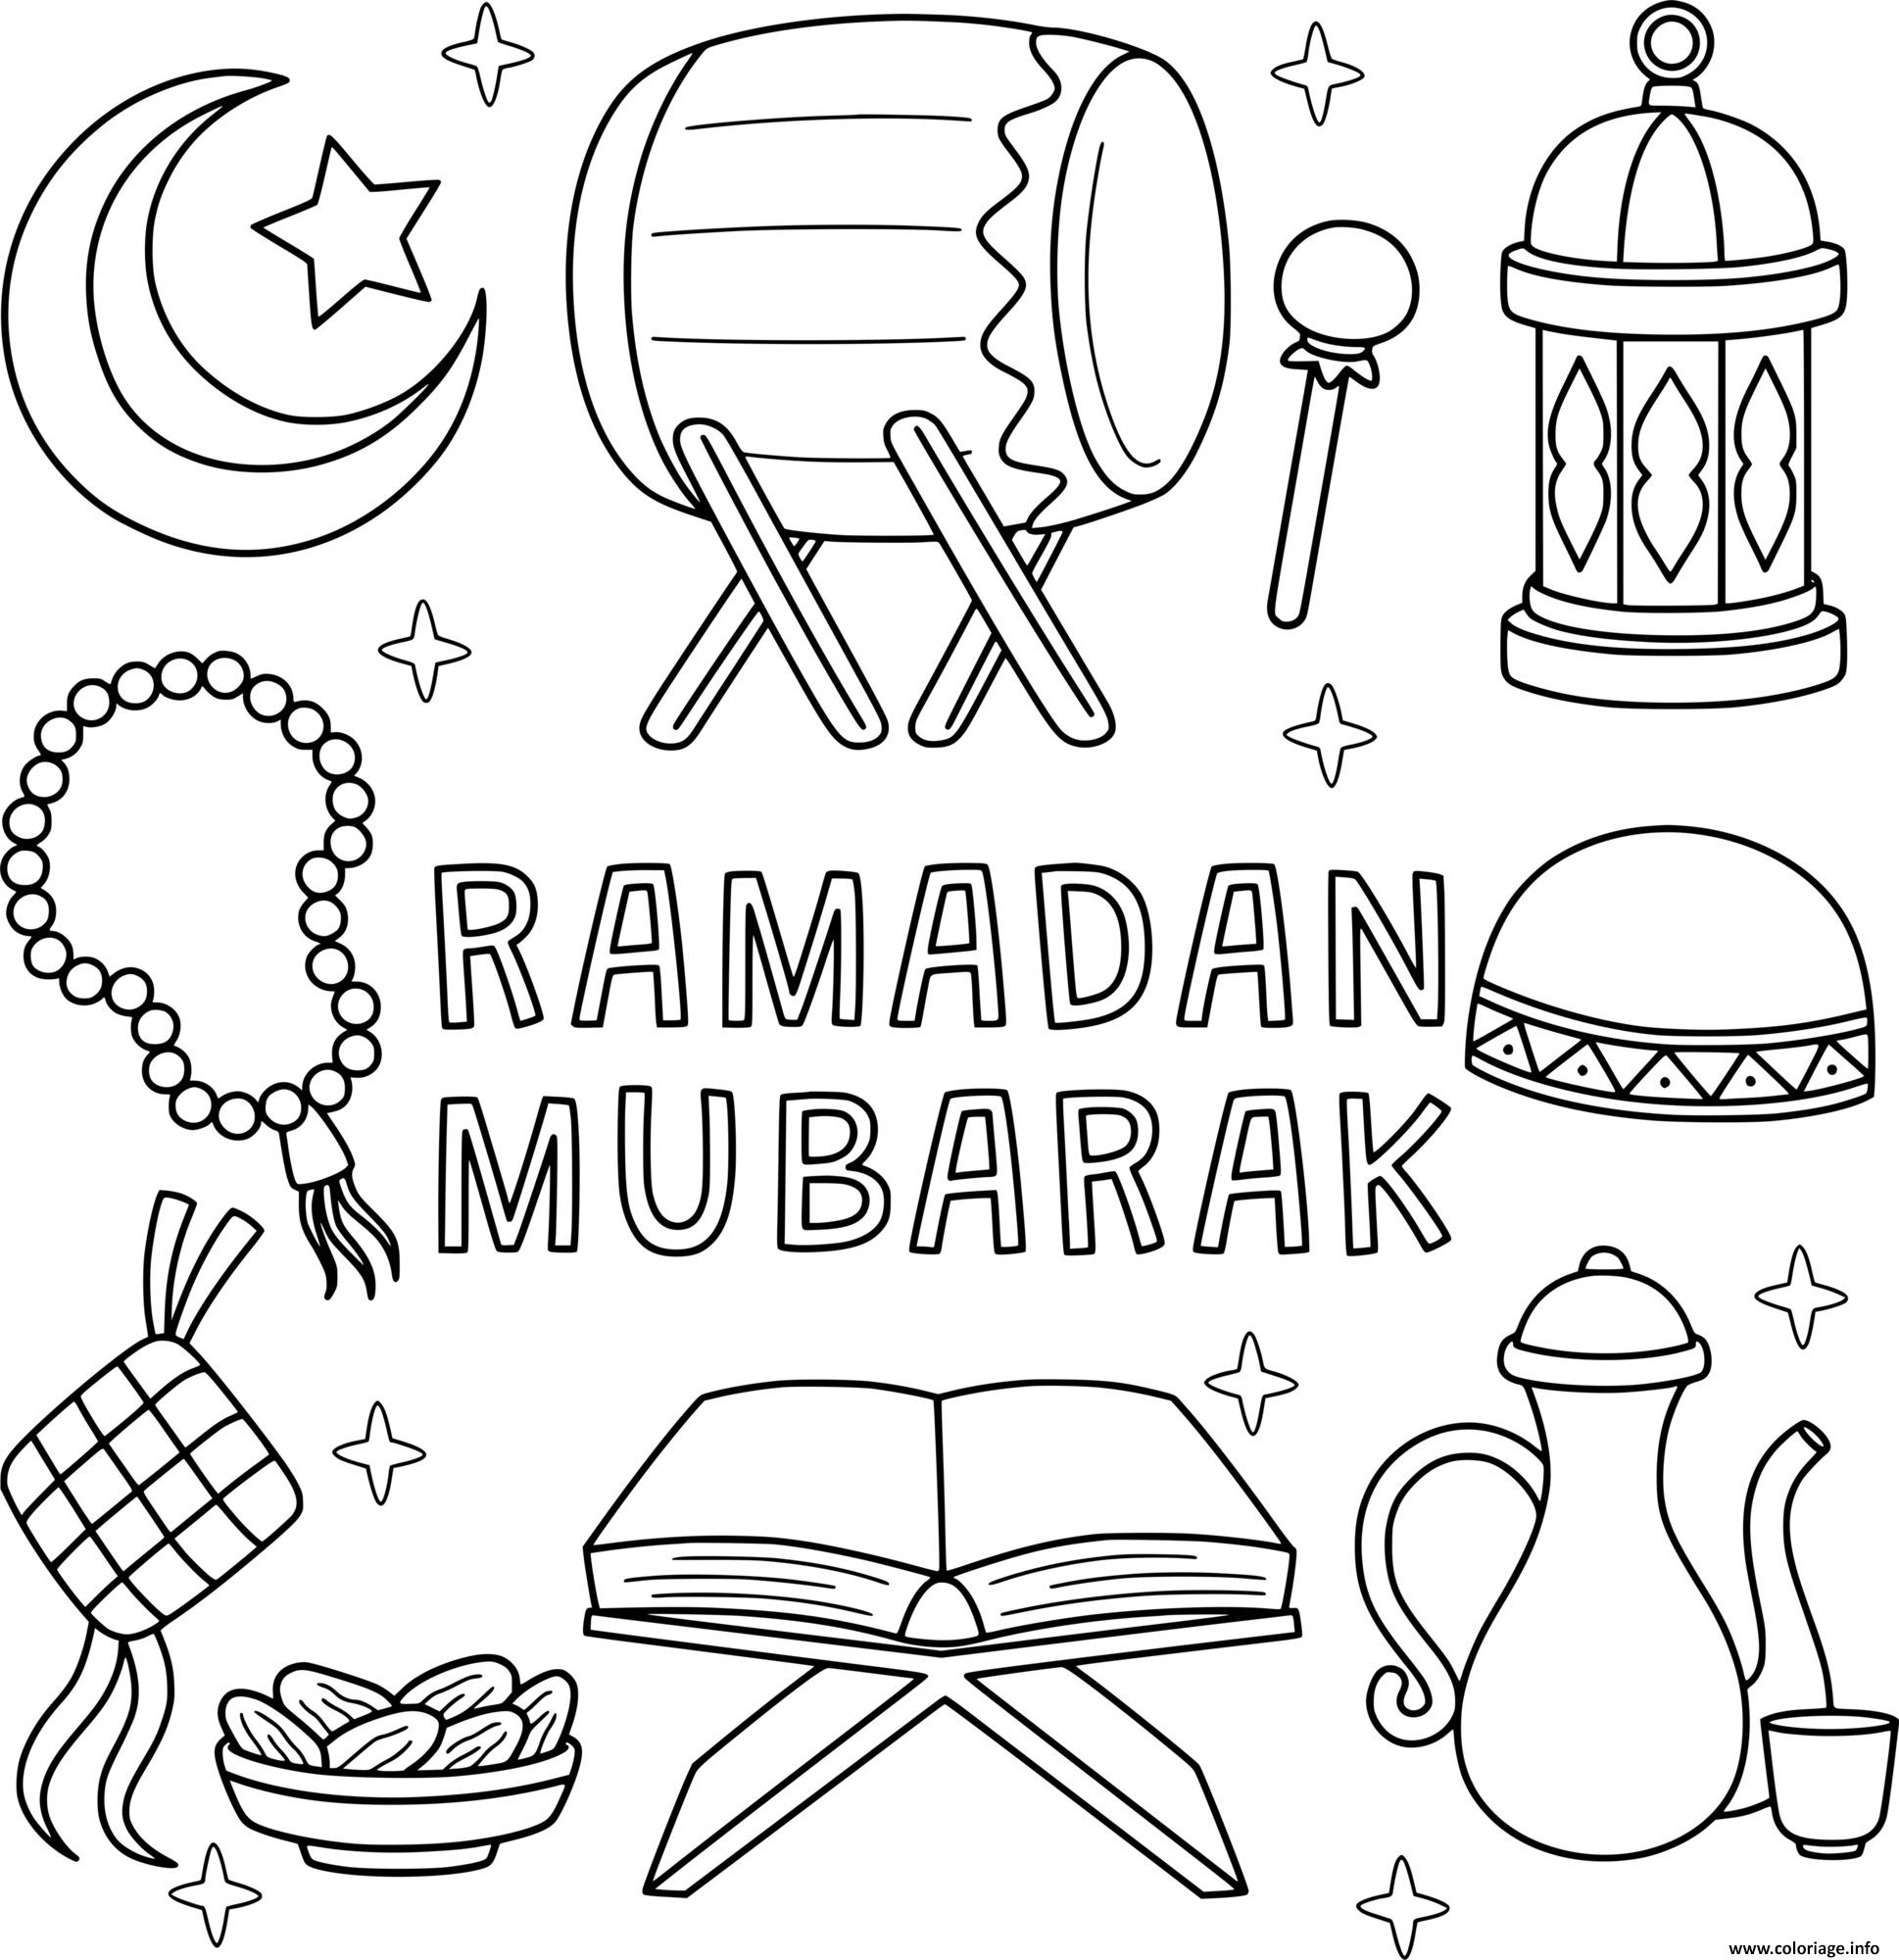 Dessin ramadan moubarak facile pour enfants Coloriage Gratuit à Imprimer